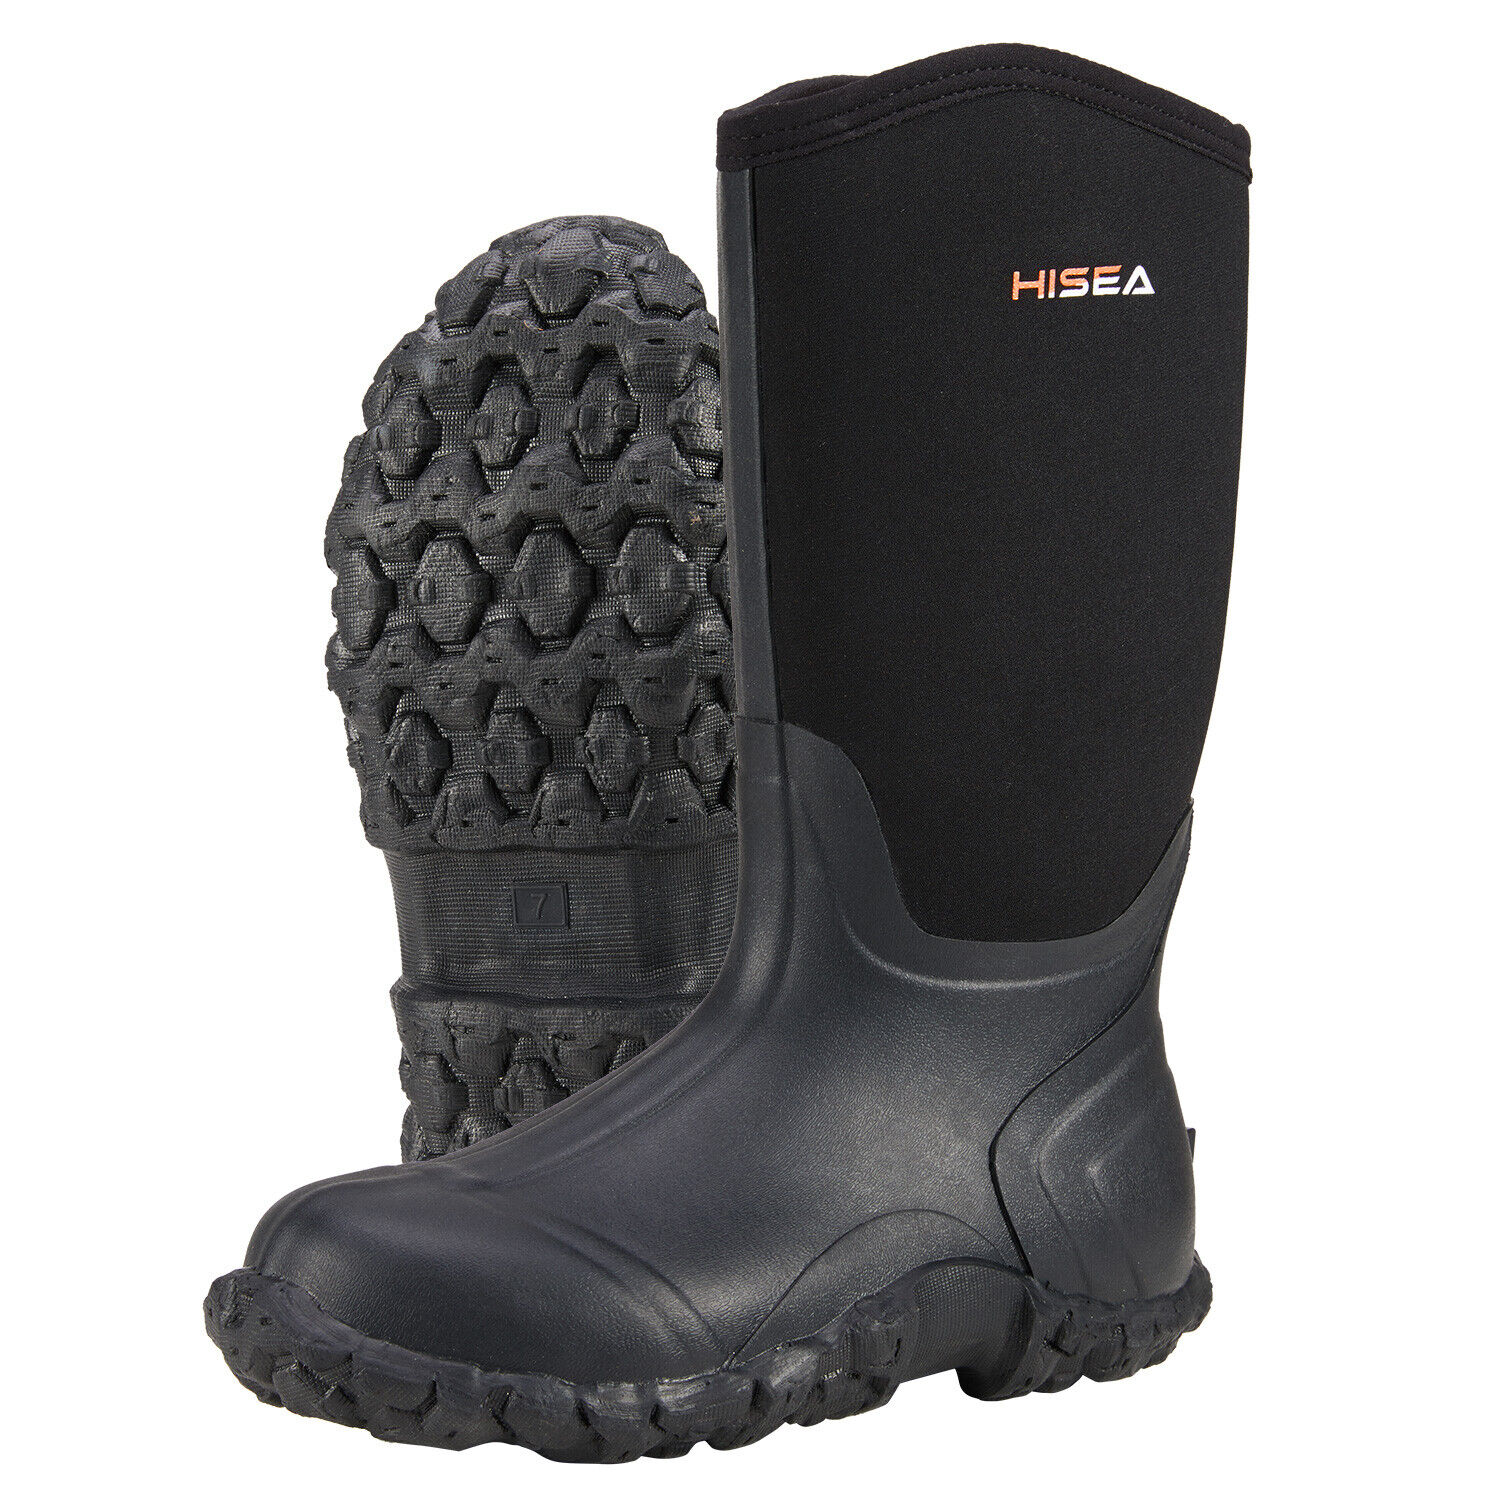 HISEA Men's Boots Waterproof Neoprene Insulated Mud Hunting & Fishing Rain Boots